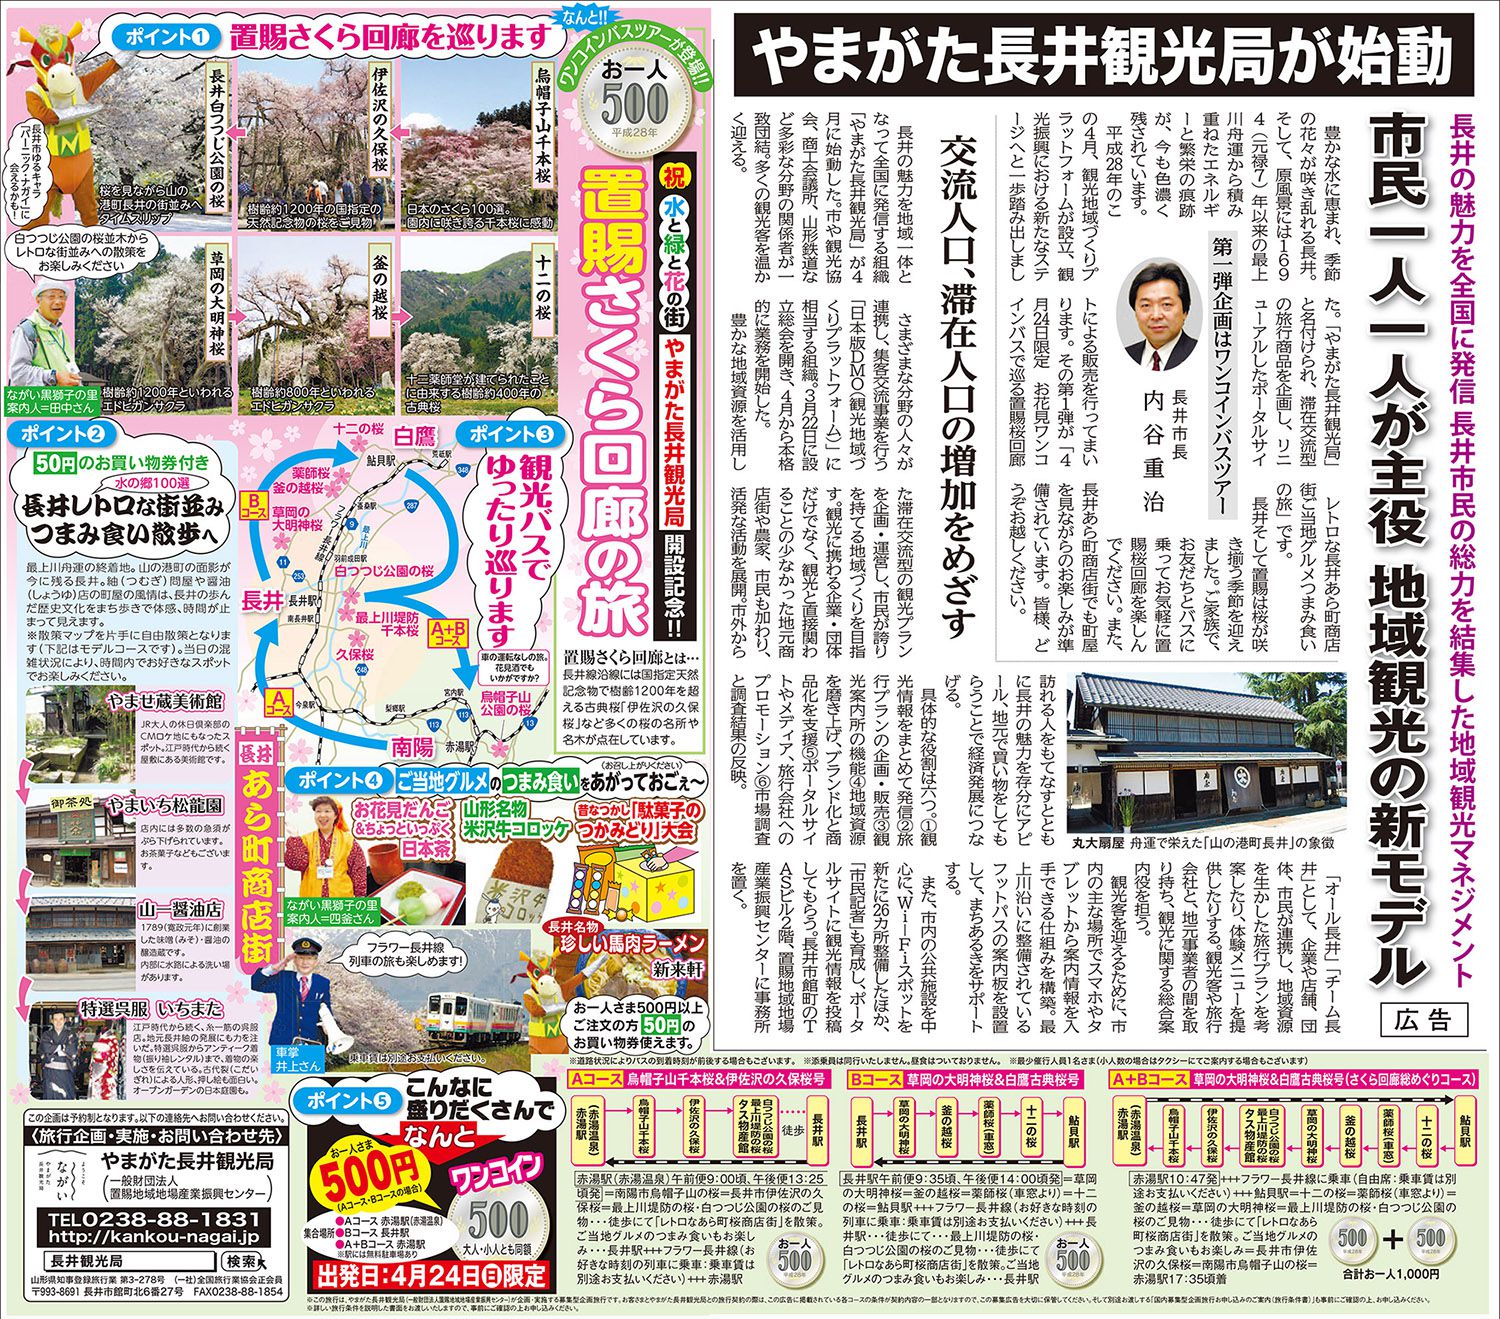 4月10日の山形新聞に記事が掲載されました。